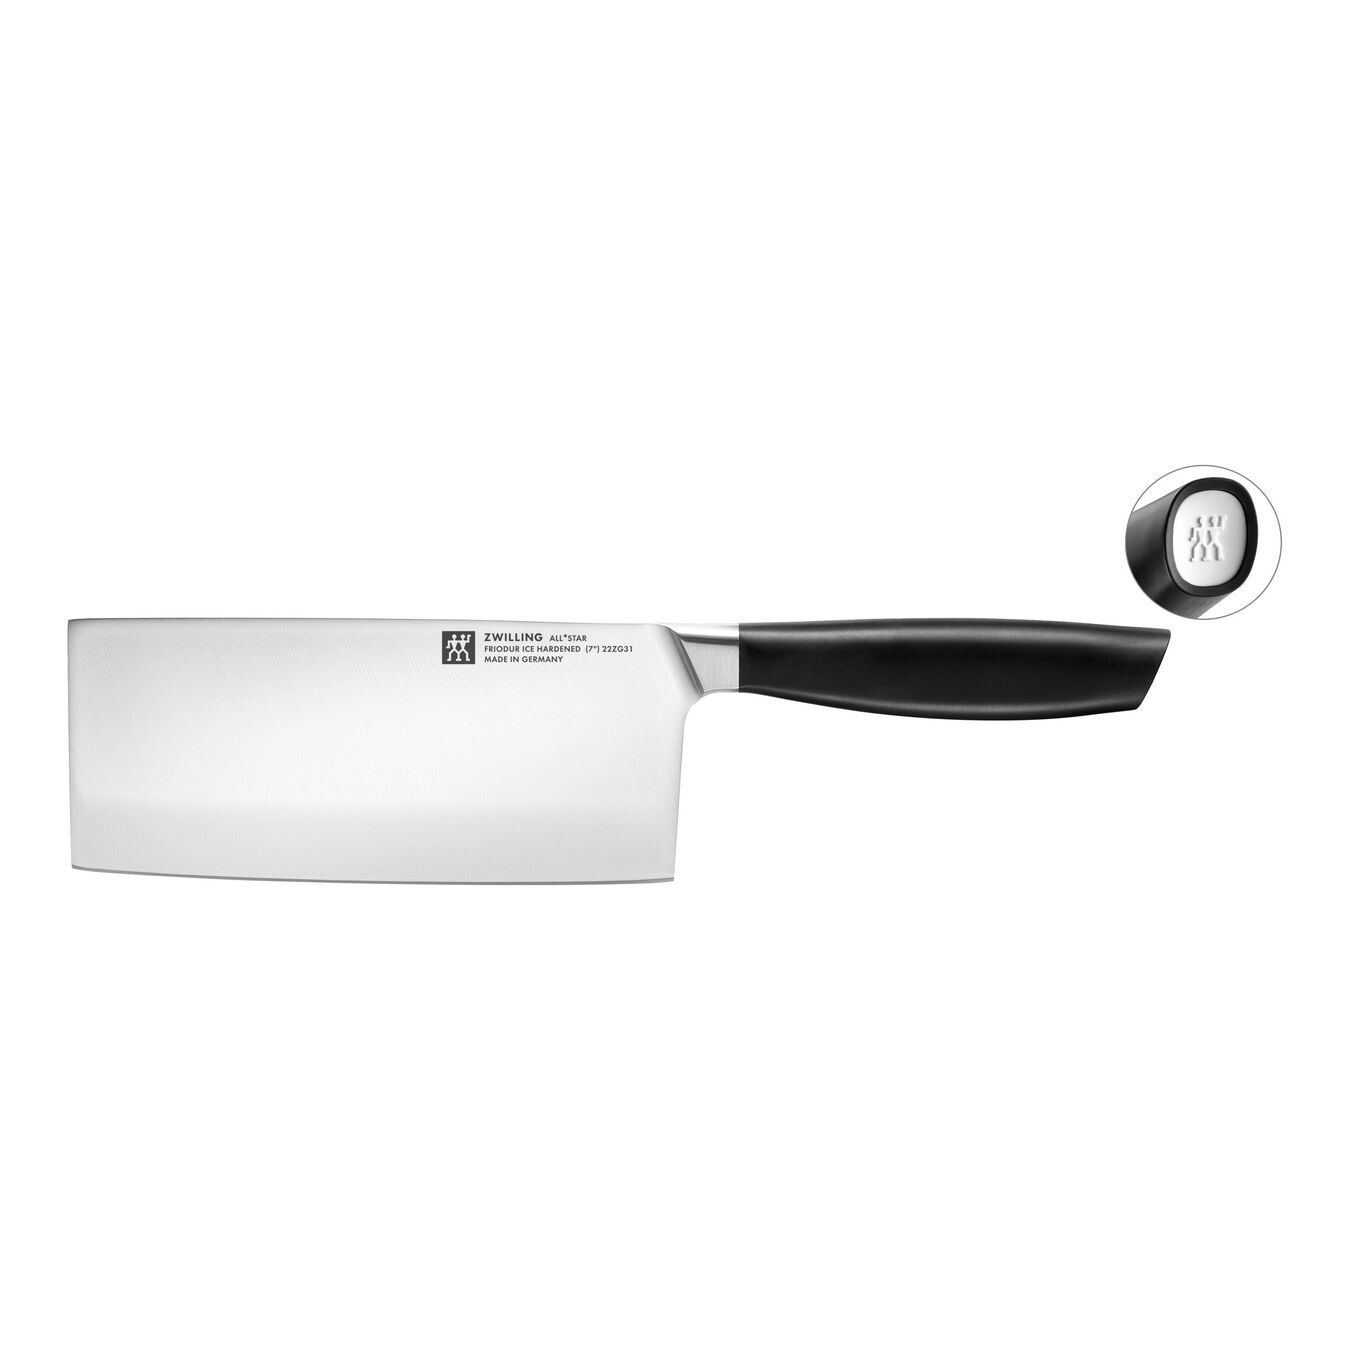 Couteau de chef chinois 18 cm, Blanc,,large 1